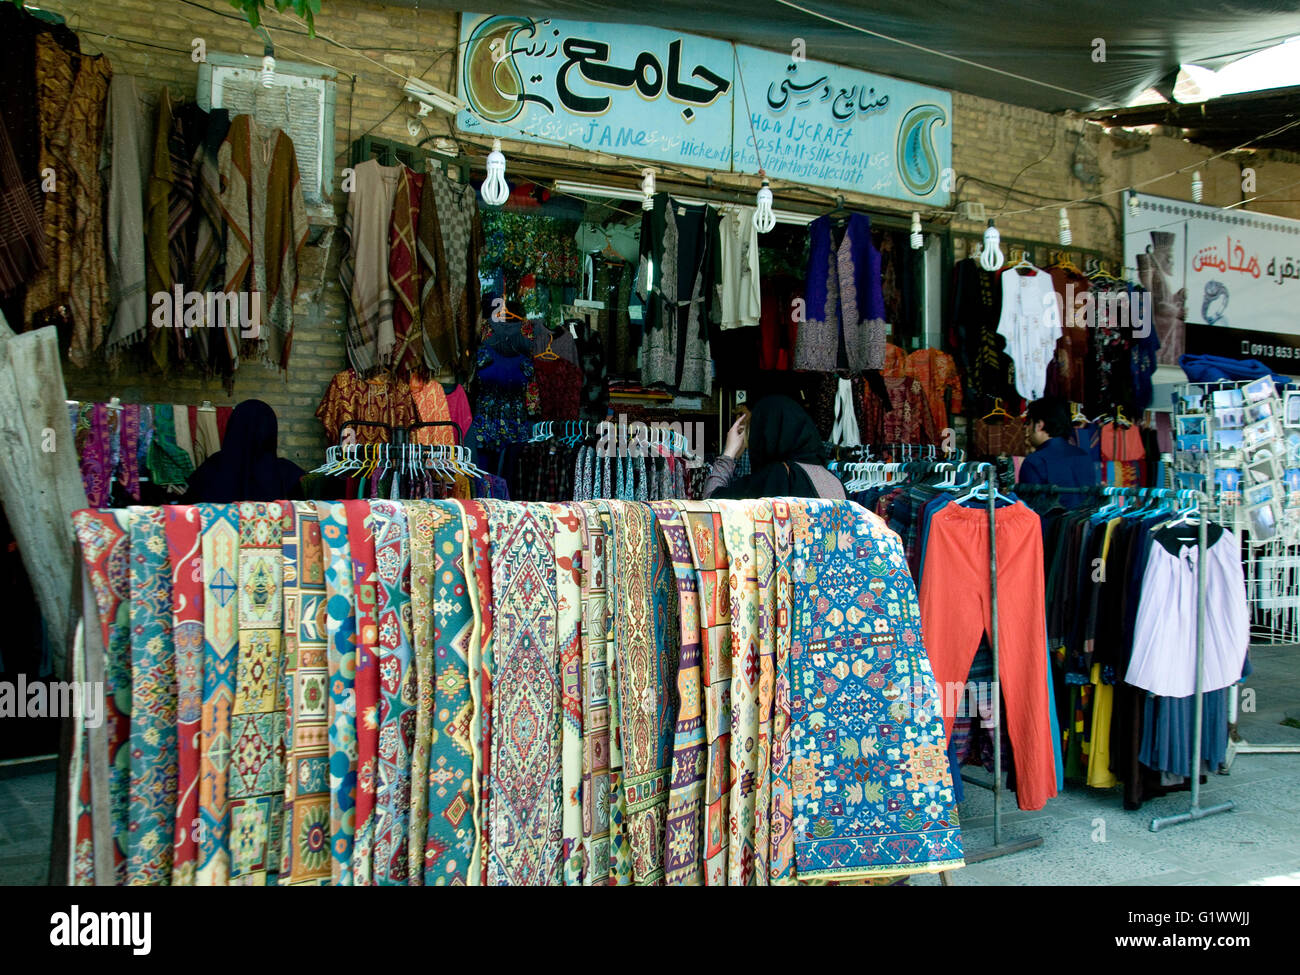 Fine textiles son una larga tradición en Yadz, una antigua ciudad en Irán.  Esta pantalla en la ciudad del bazar principal podría ser un patrimonio  Fotografía de stock - Alamy